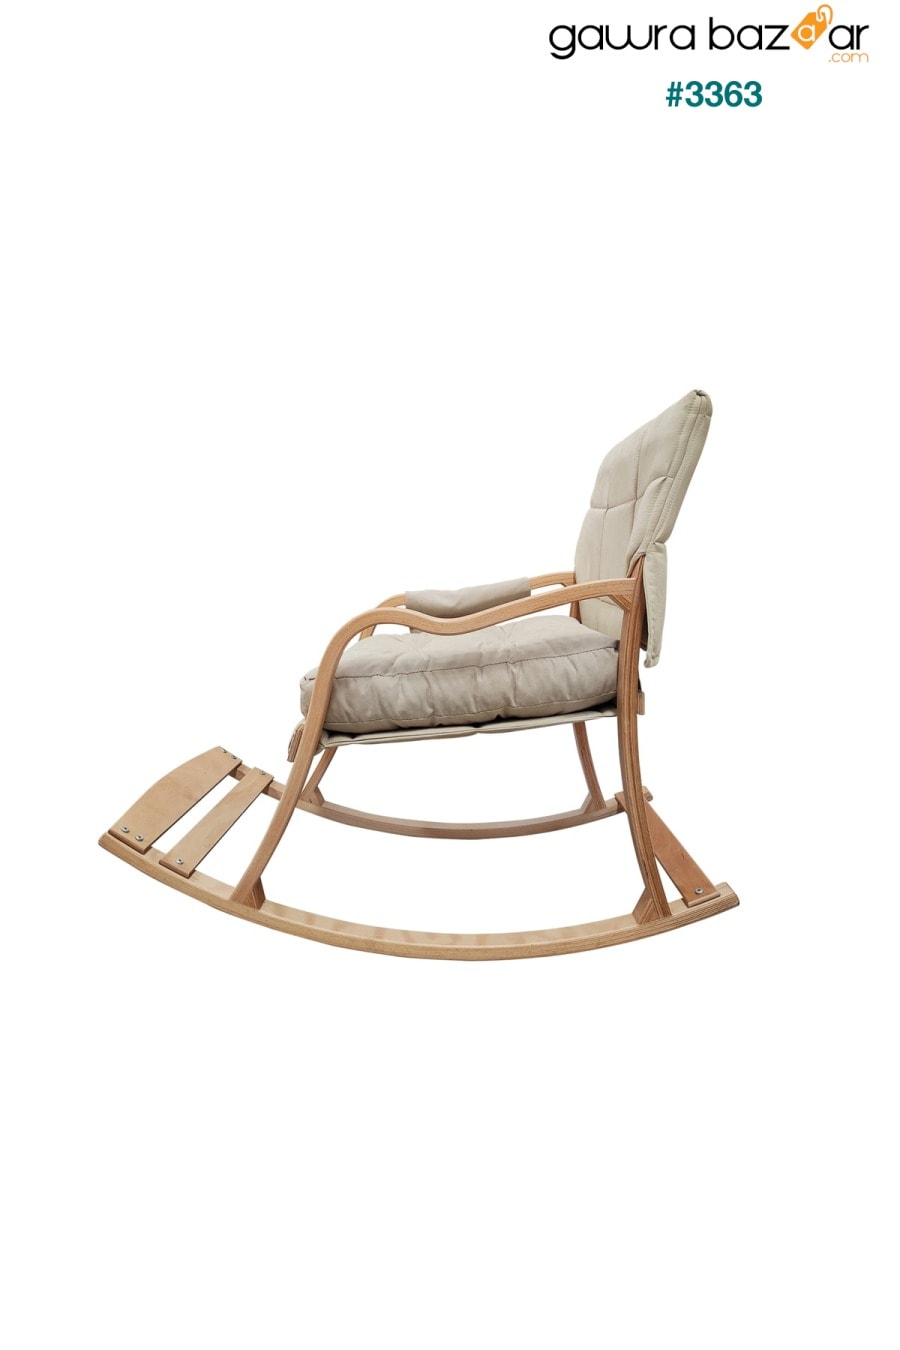 كرسي هزاز Paşa الخشبي الطويل وكرسي الراحة الطبيعي كريم Mobildeco 1